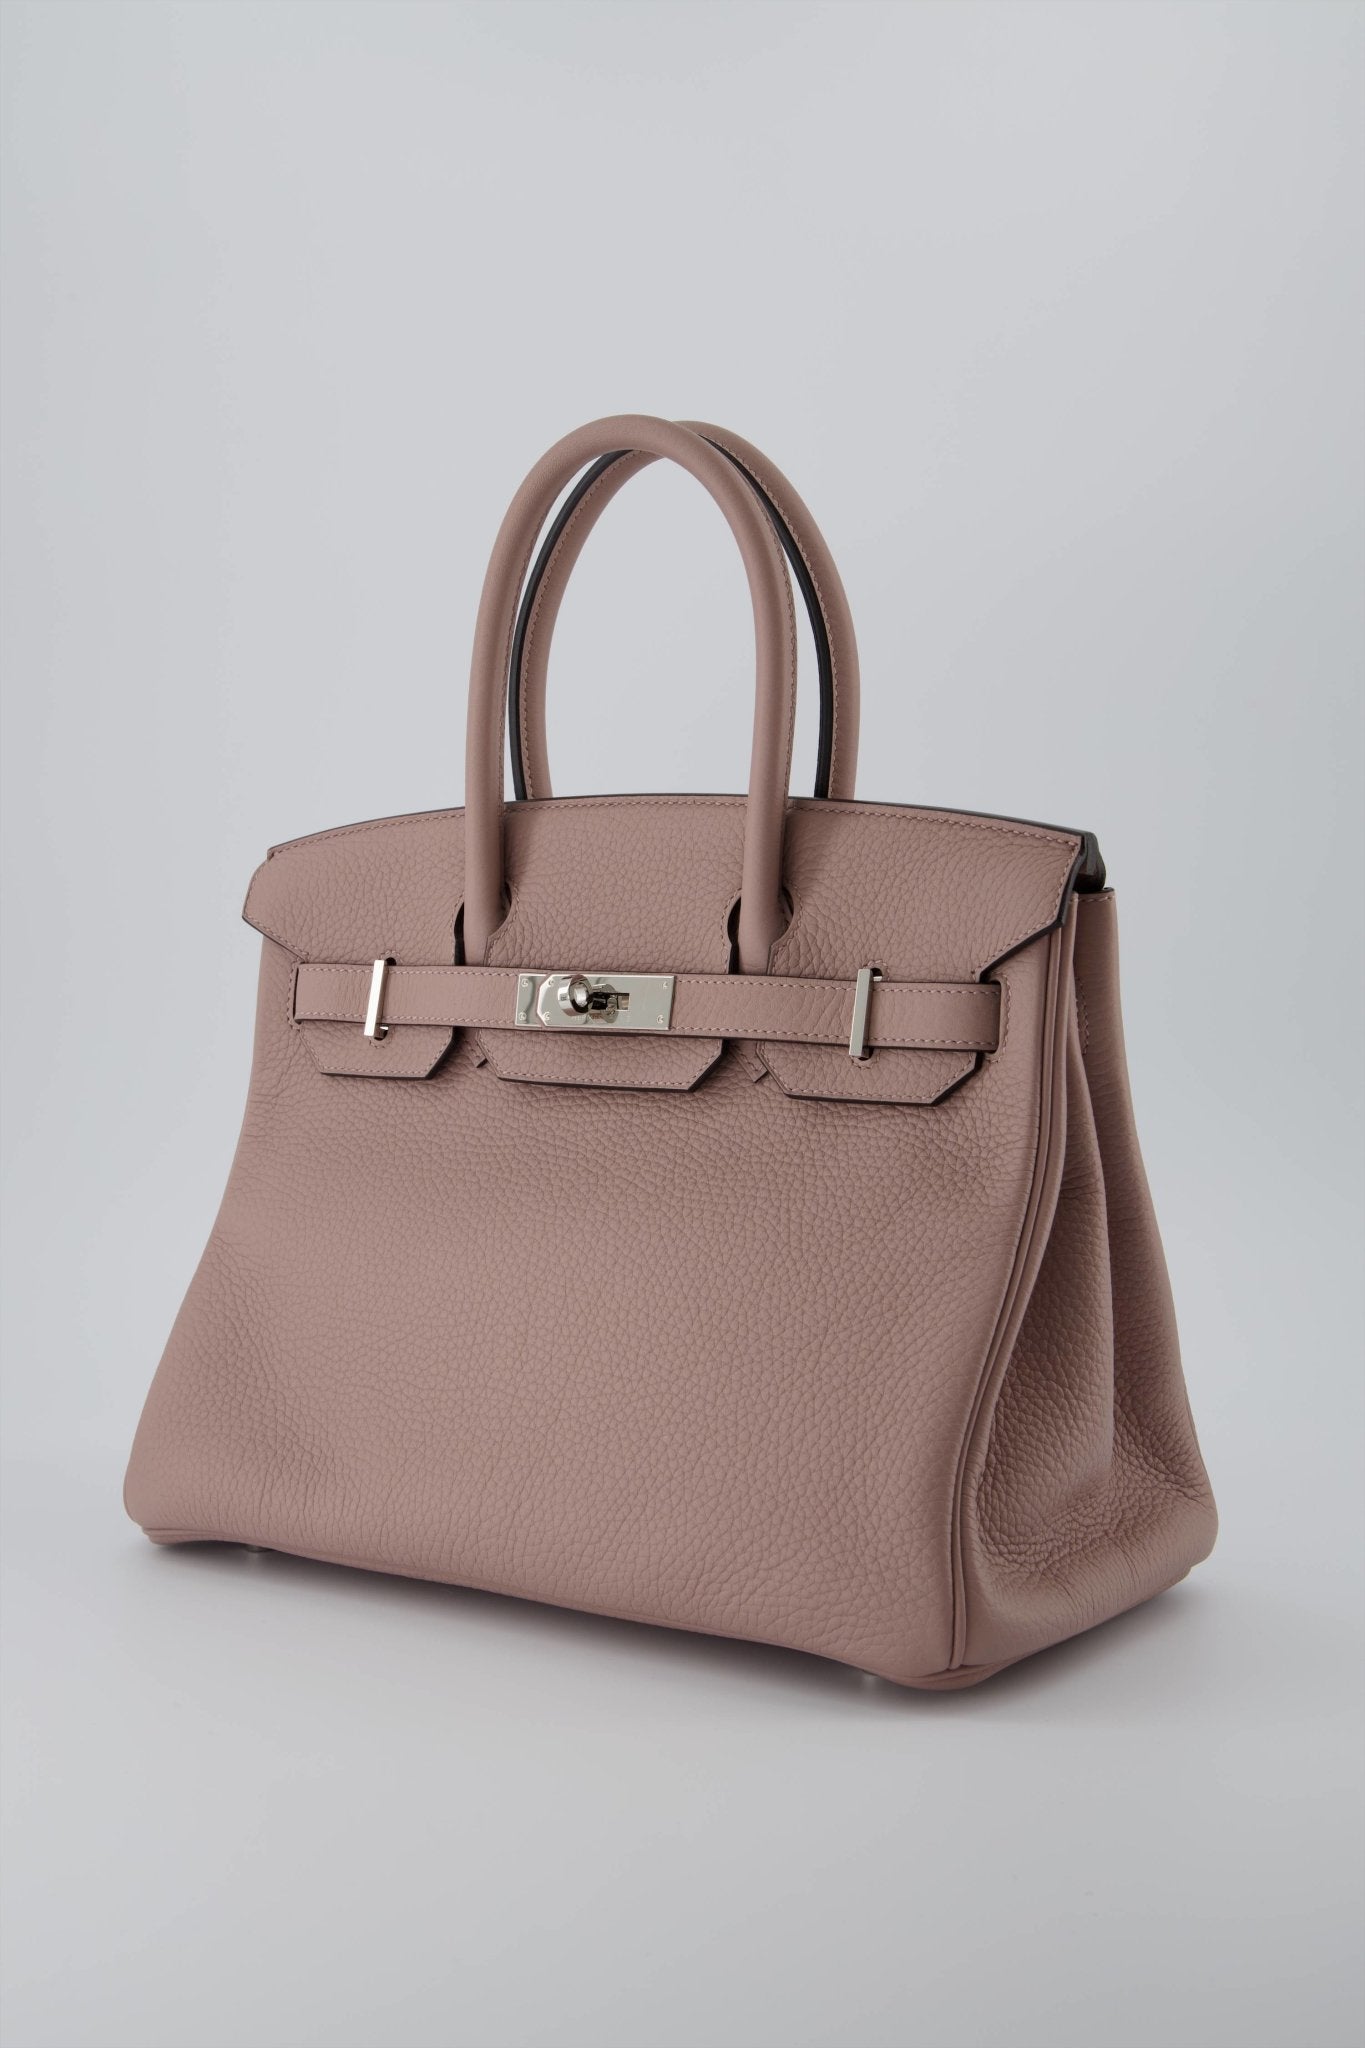 Hermes Birkin 30 Handbag Glycine Clemence Leather